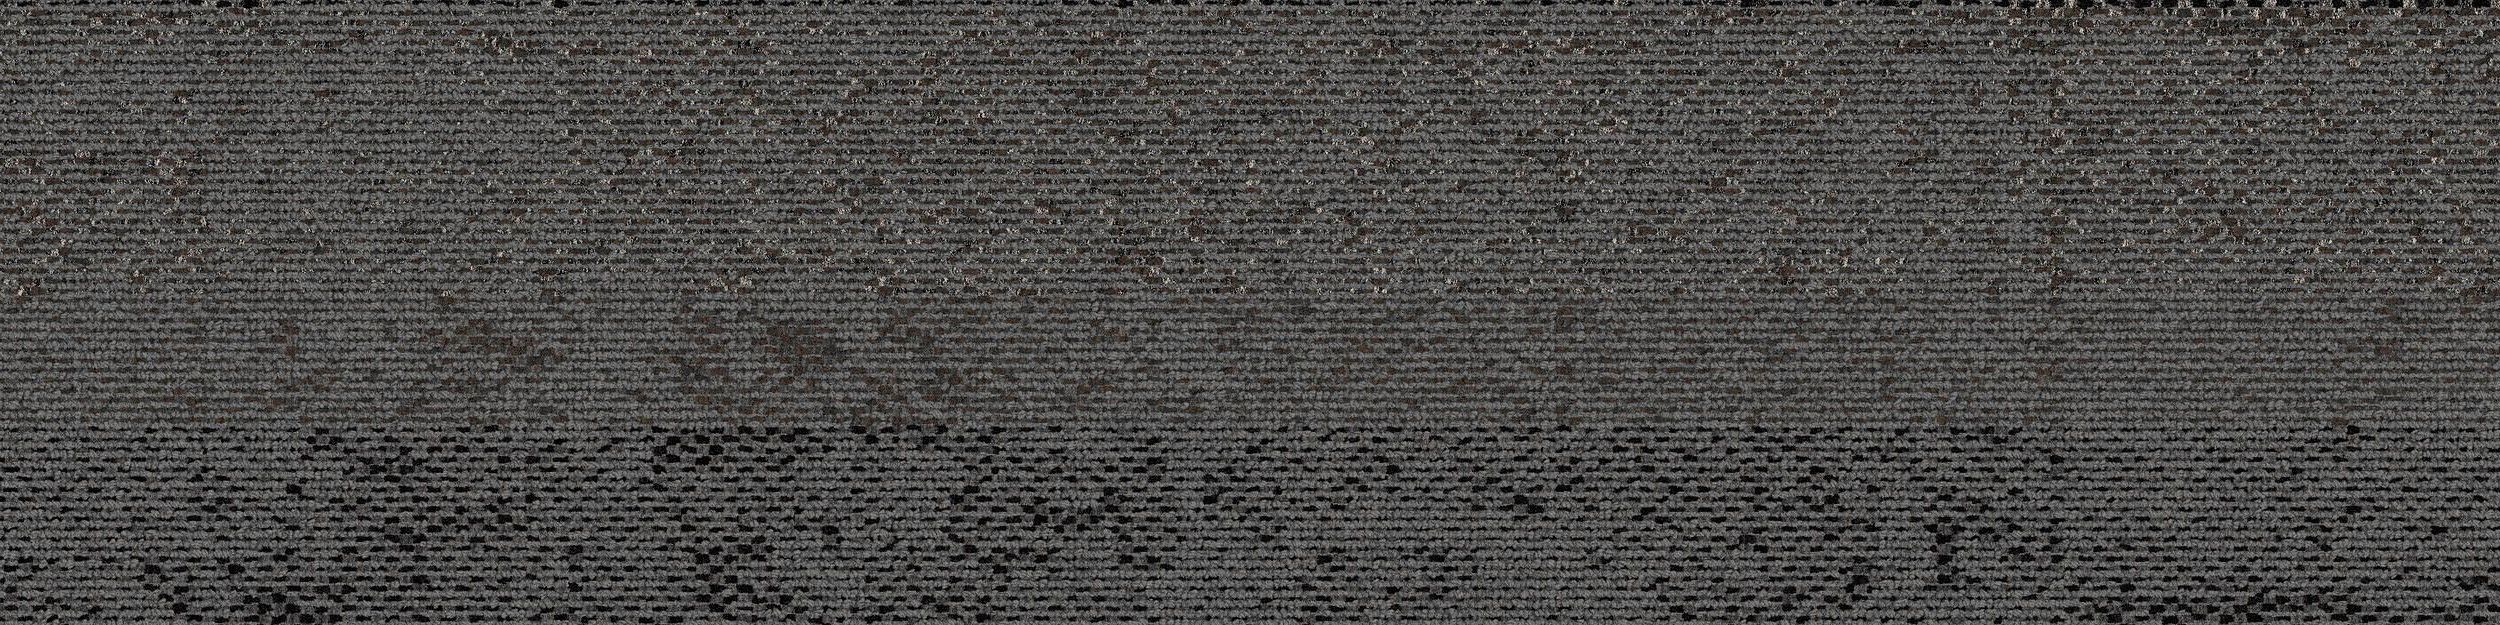 HN820 Carpet Tile In Slate afbeeldingnummer 2